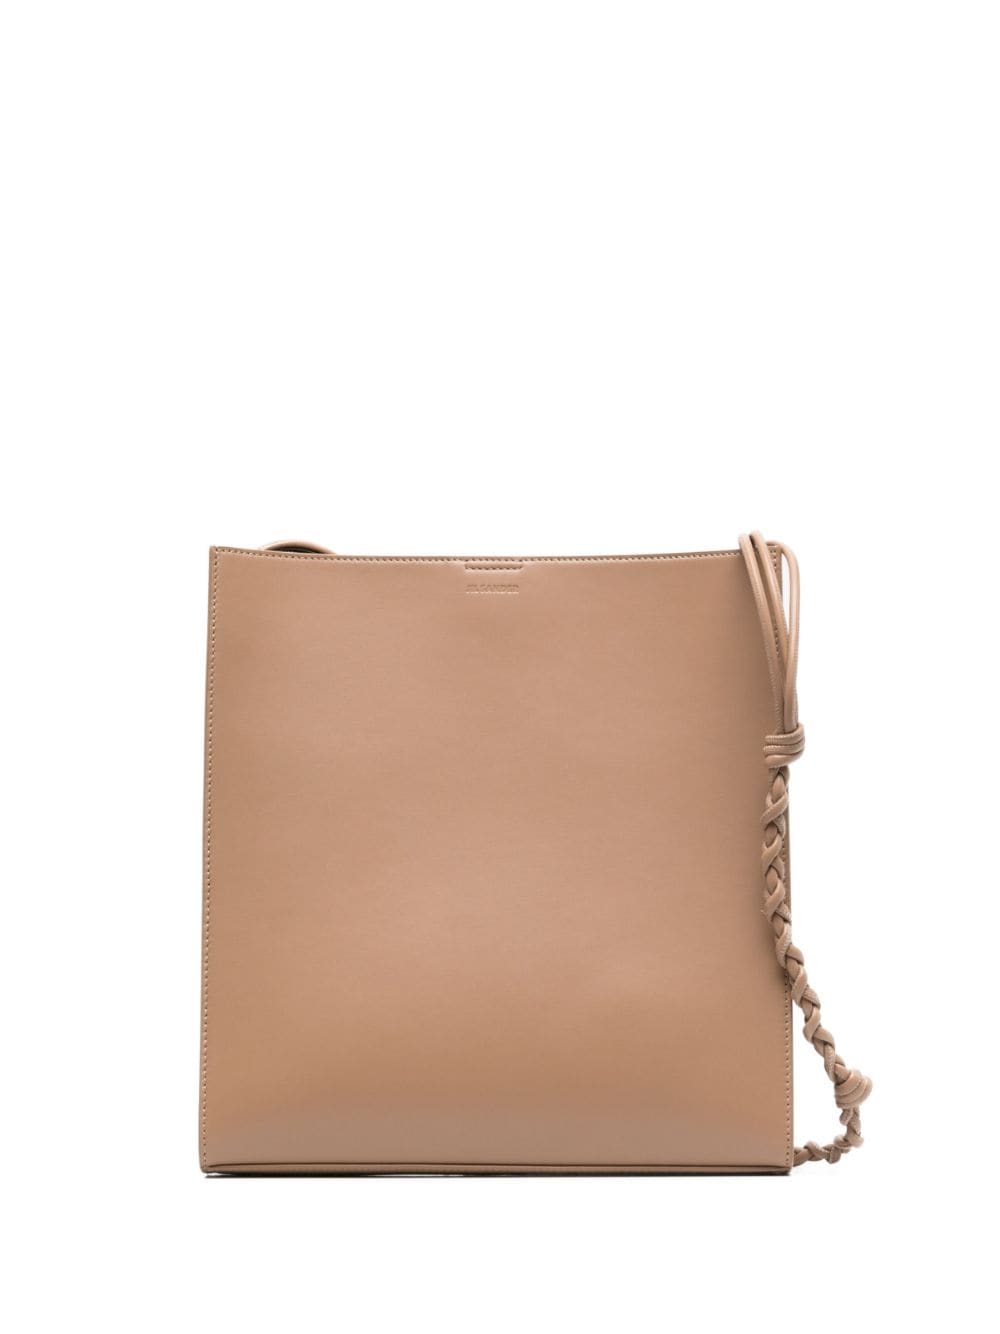 Jil Sander medium Tangle leather shoulder bag - Neutrals